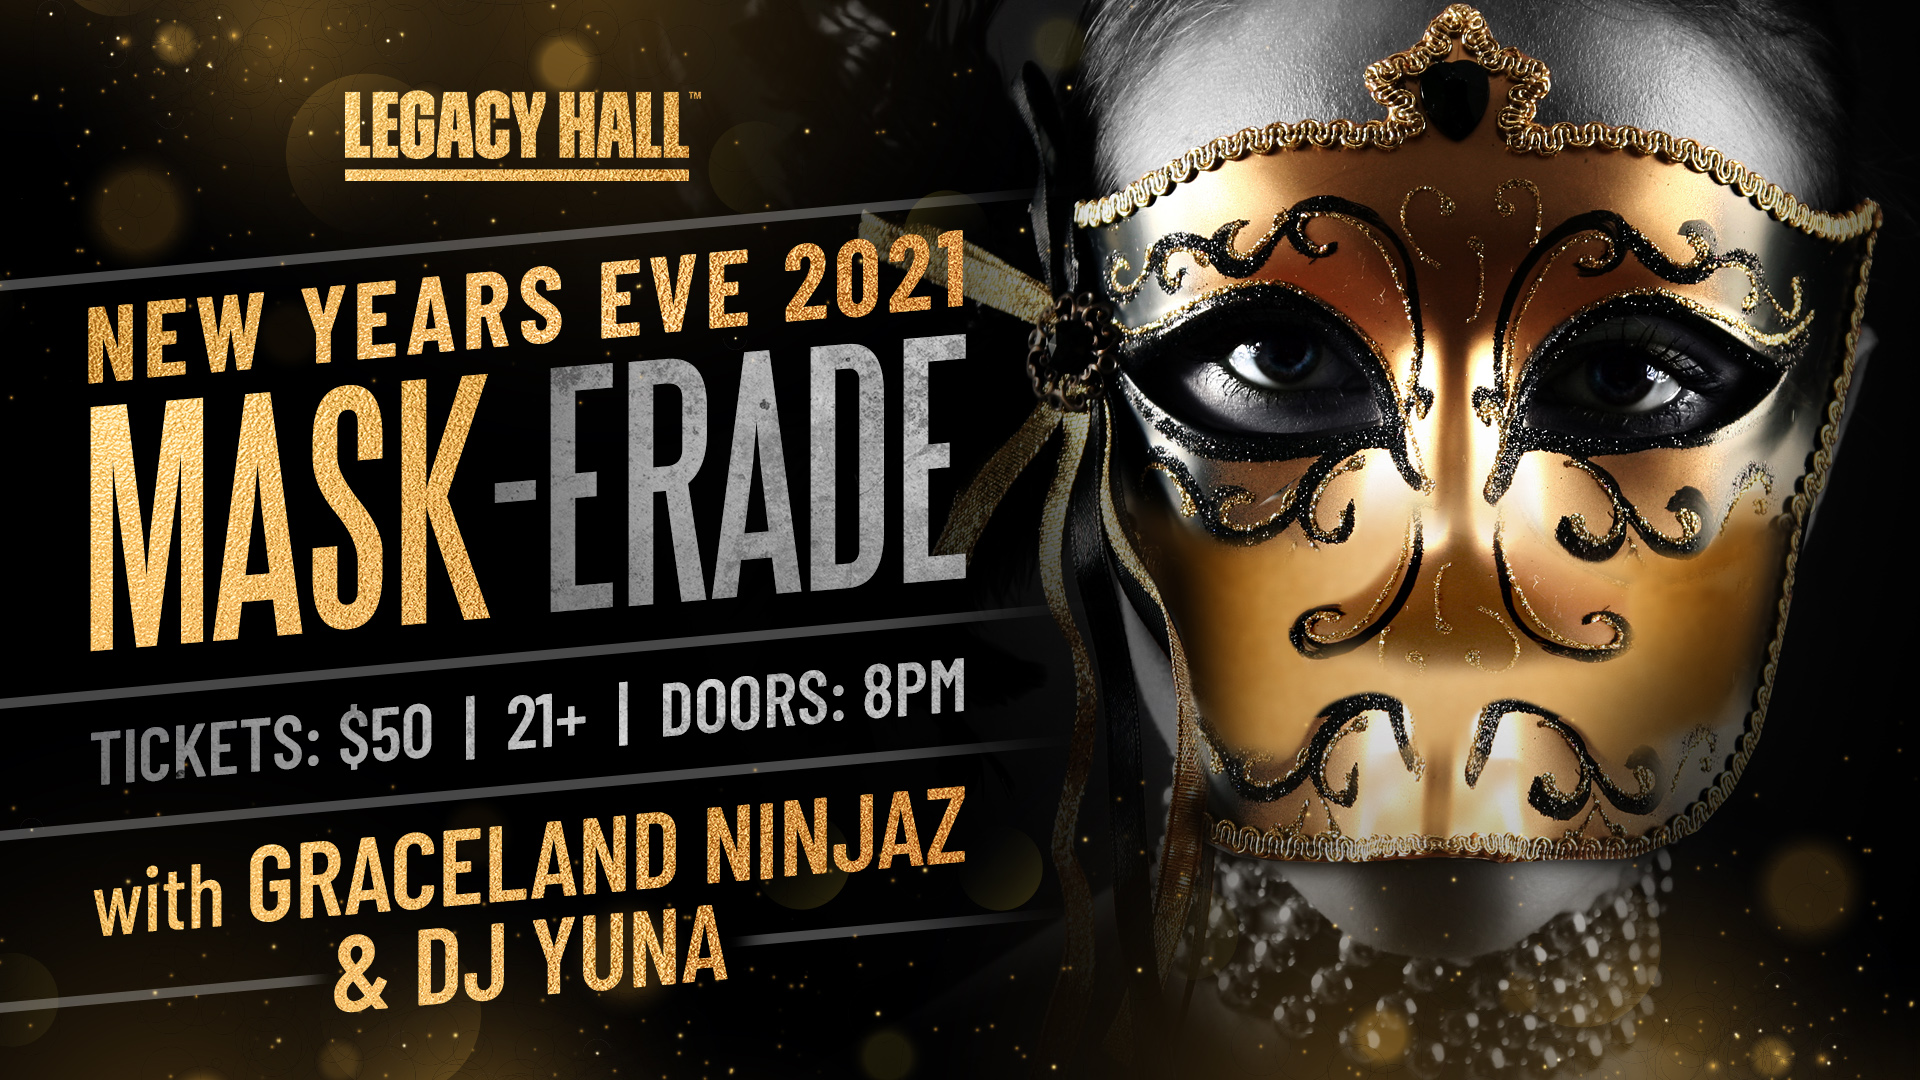 NYE 2021 Mask-erade Party at Legacy Hall - hero